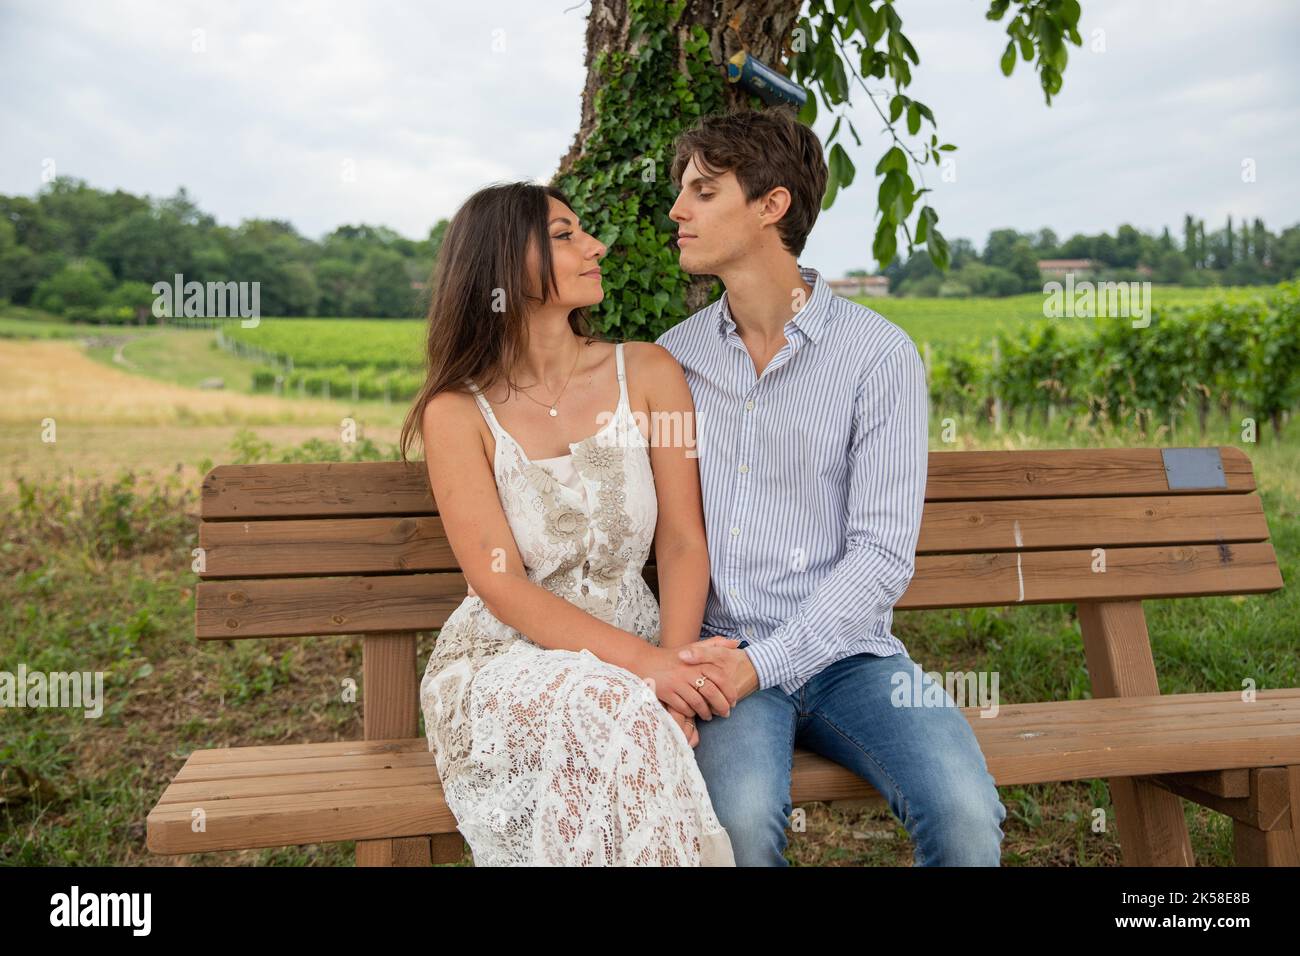 Deux amoureux regardent tendinement dans les yeux de l'autre tout en étant assis sur le banc pendant une promenade dans la campagne. Banque D'Images